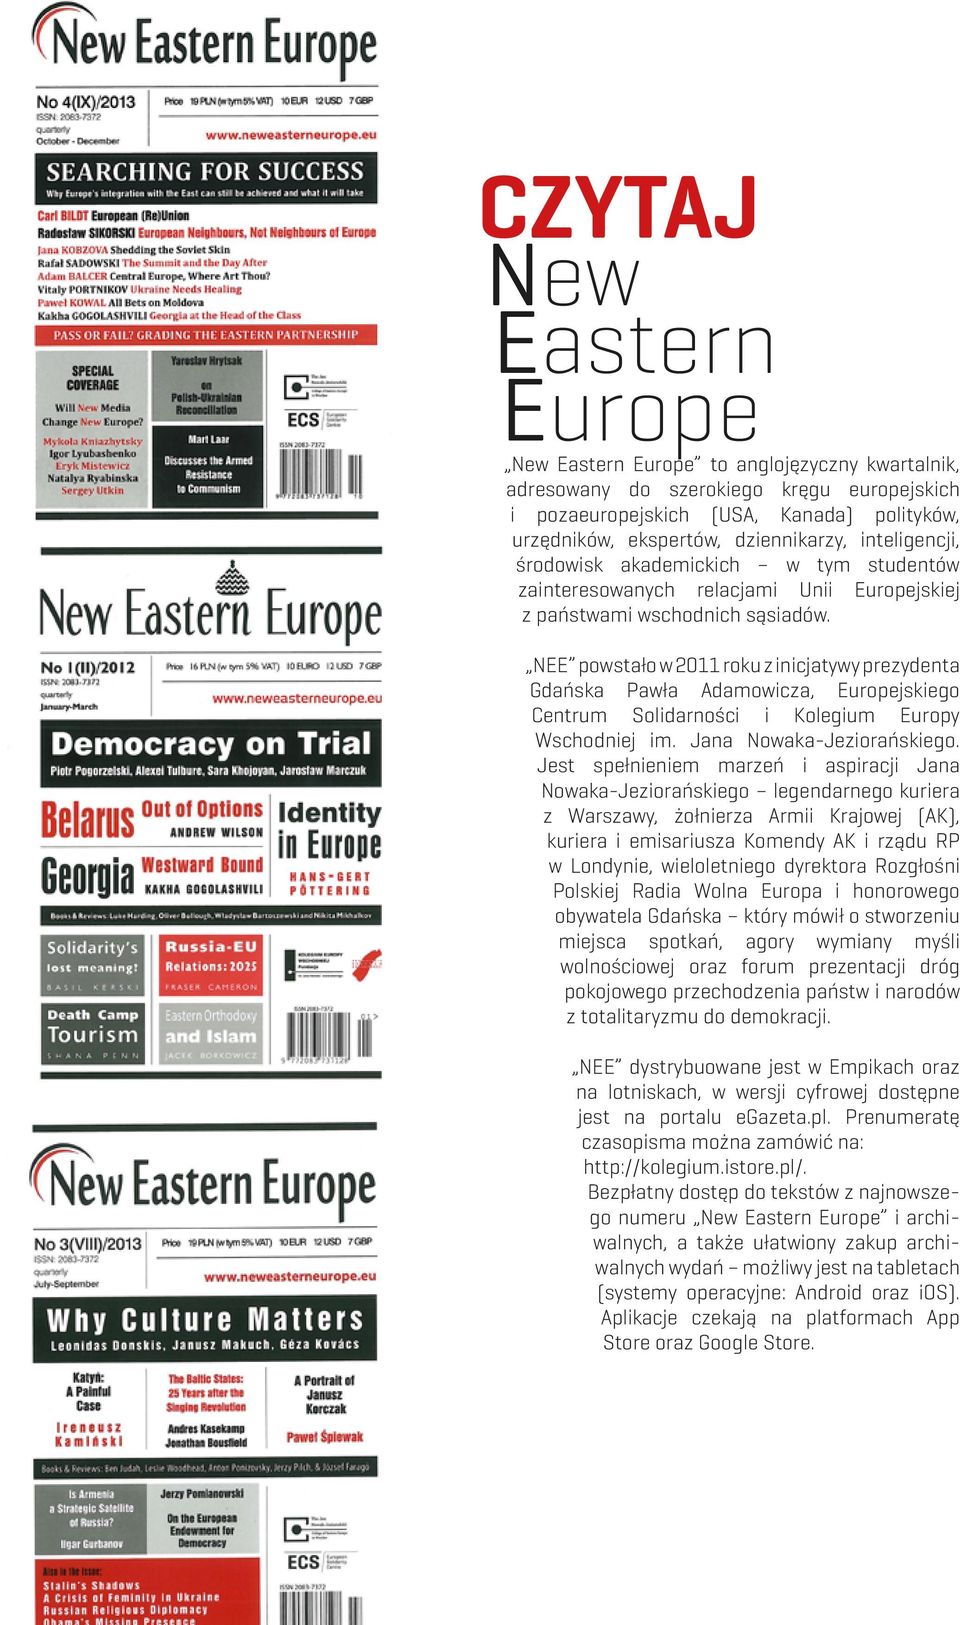 NEE powstało w 2011 roku z inicjatywy prezydenta Gdańska Pawła Adamowicza, Europejskiego Centrum Solidarności i Kolegium Europy Wschodniej im. Jana Nowaka-Jeziorańskiego.